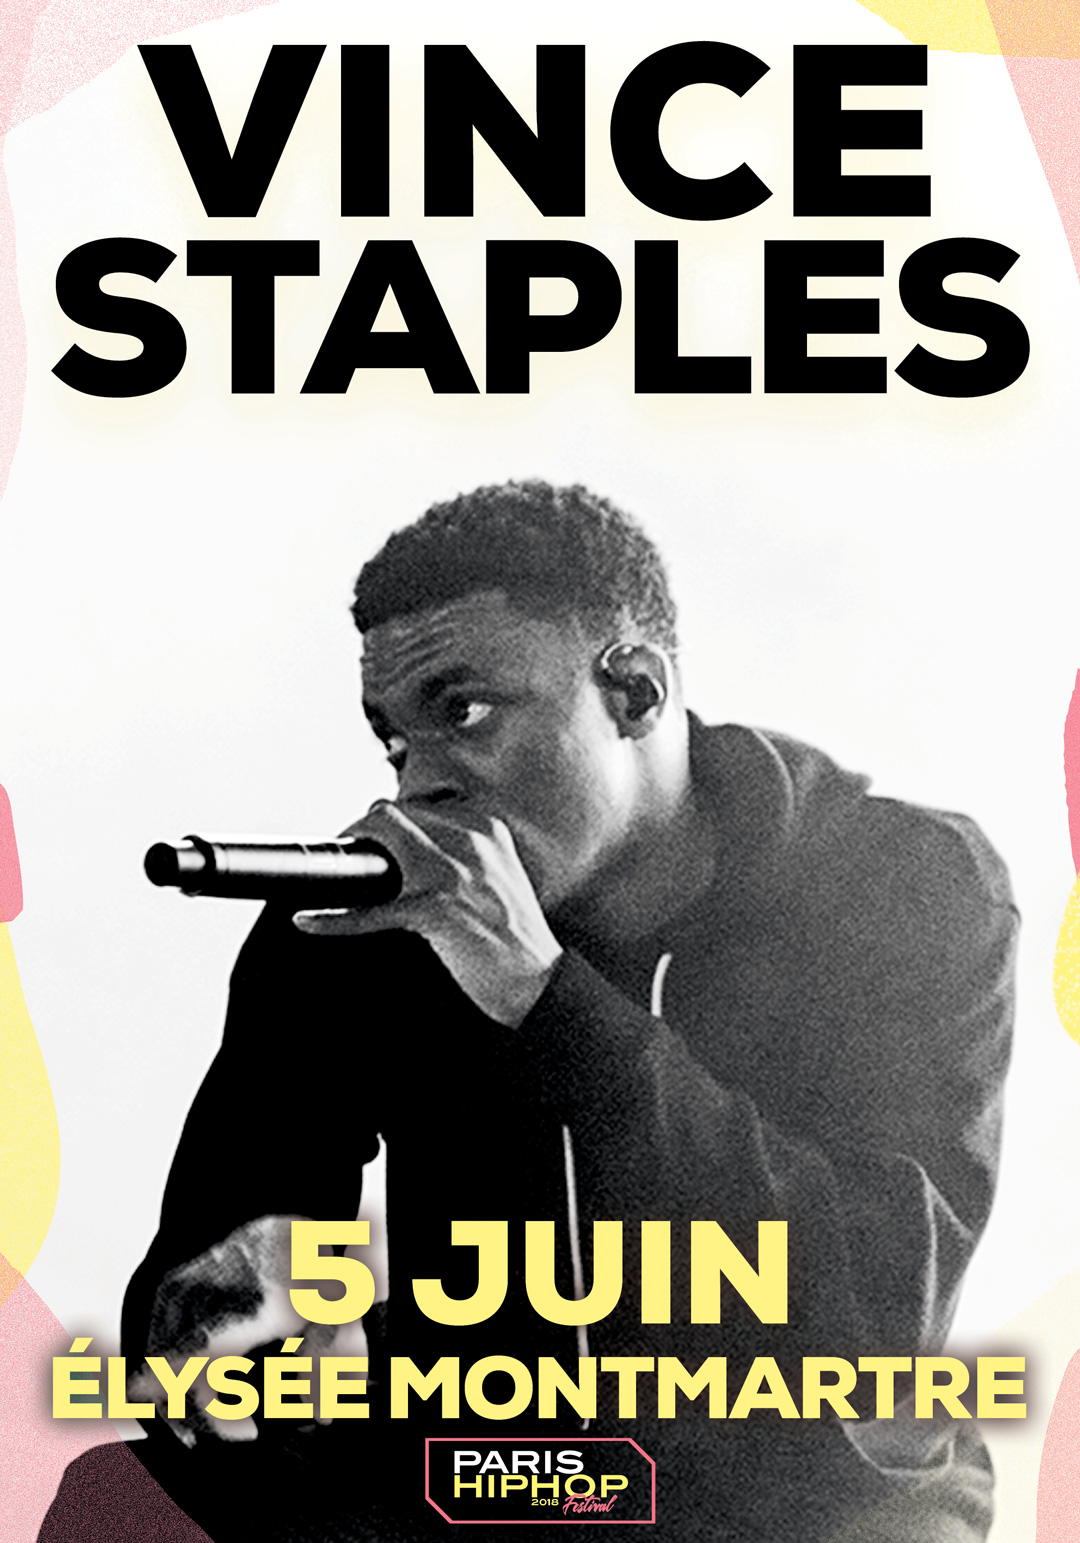 Vince Staples en concert à l'Élysée Montmartre Paris